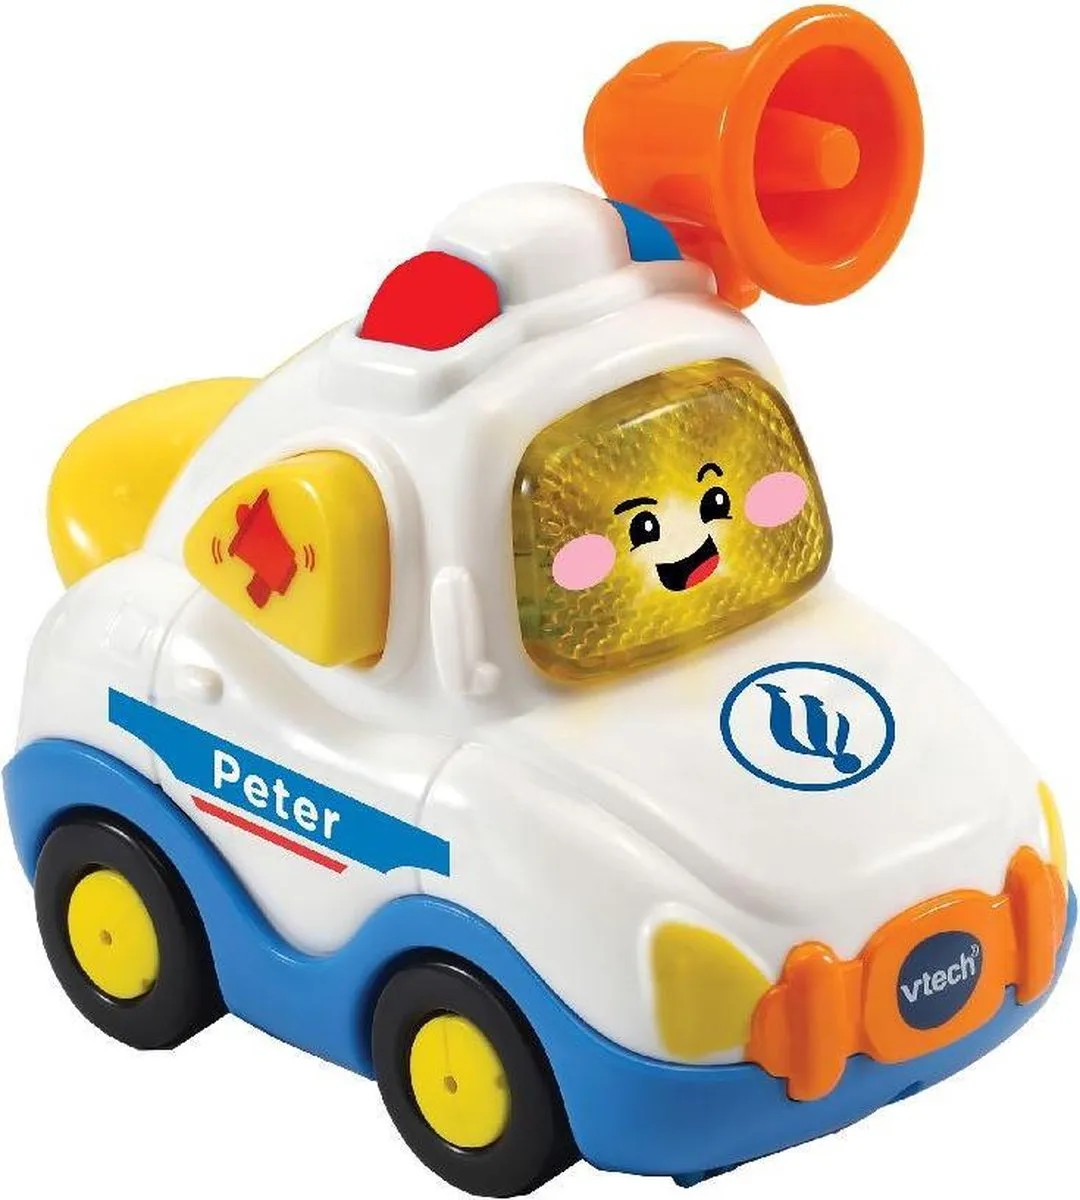 VTech Toet Toet Auto's Peter Politie - Educatief Babyspeelgoed - 1 tot 5 Jaar